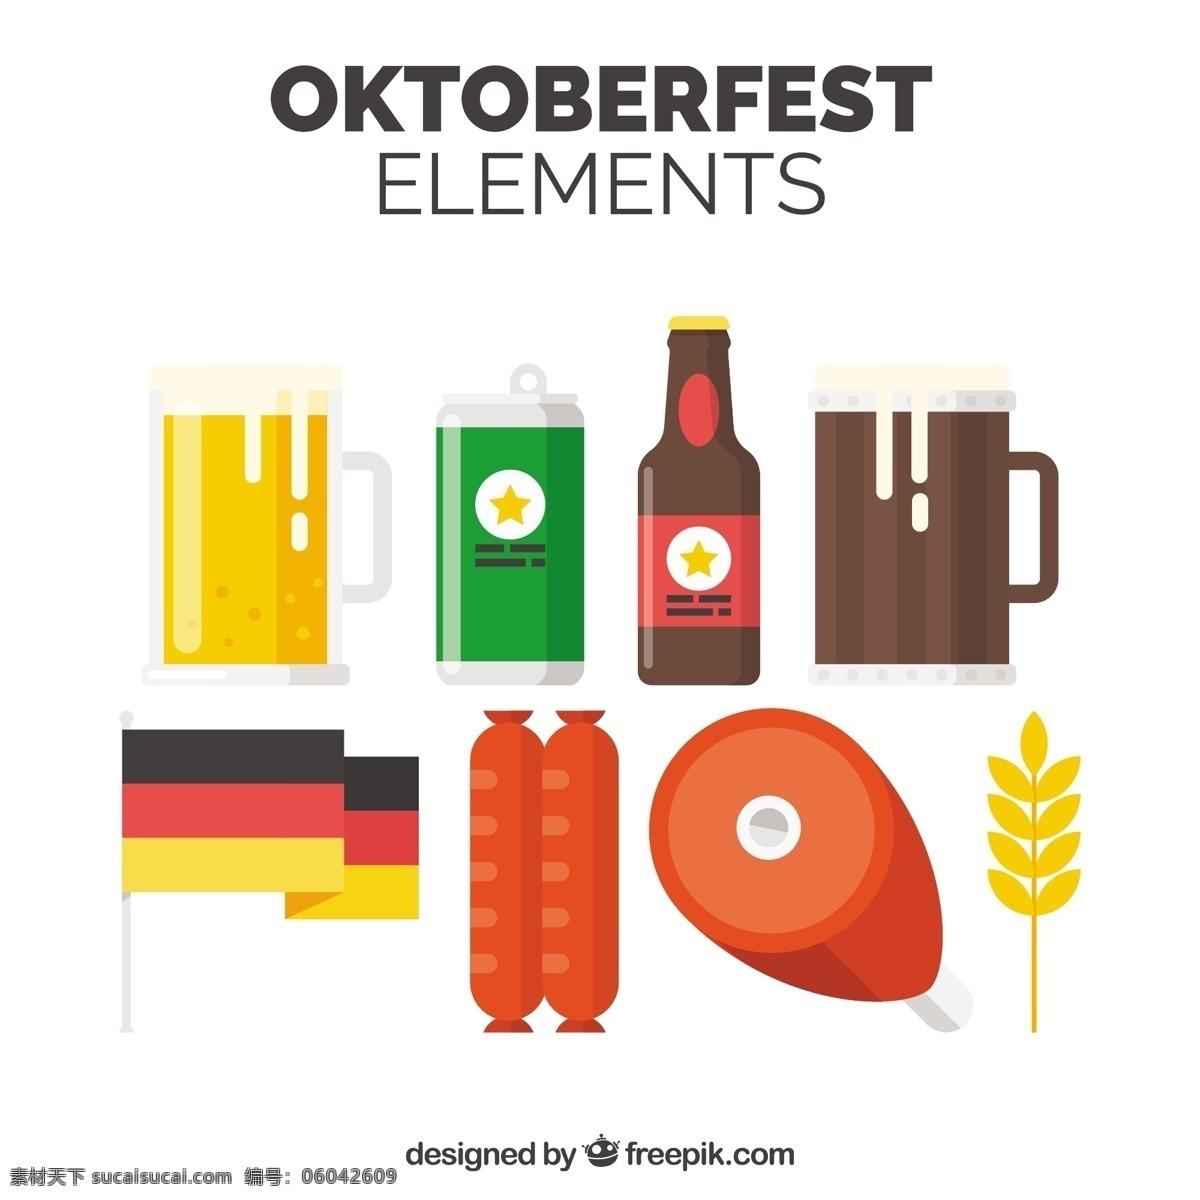 德国啤酒 食品和国旗 食物 派对 啤酒 国旗 秋天 庆祝 五颜六色 节日 瓶 扁 酒吧 小麦 玻璃 饮料 元素 平面设计 乐趣 马克杯 酒精